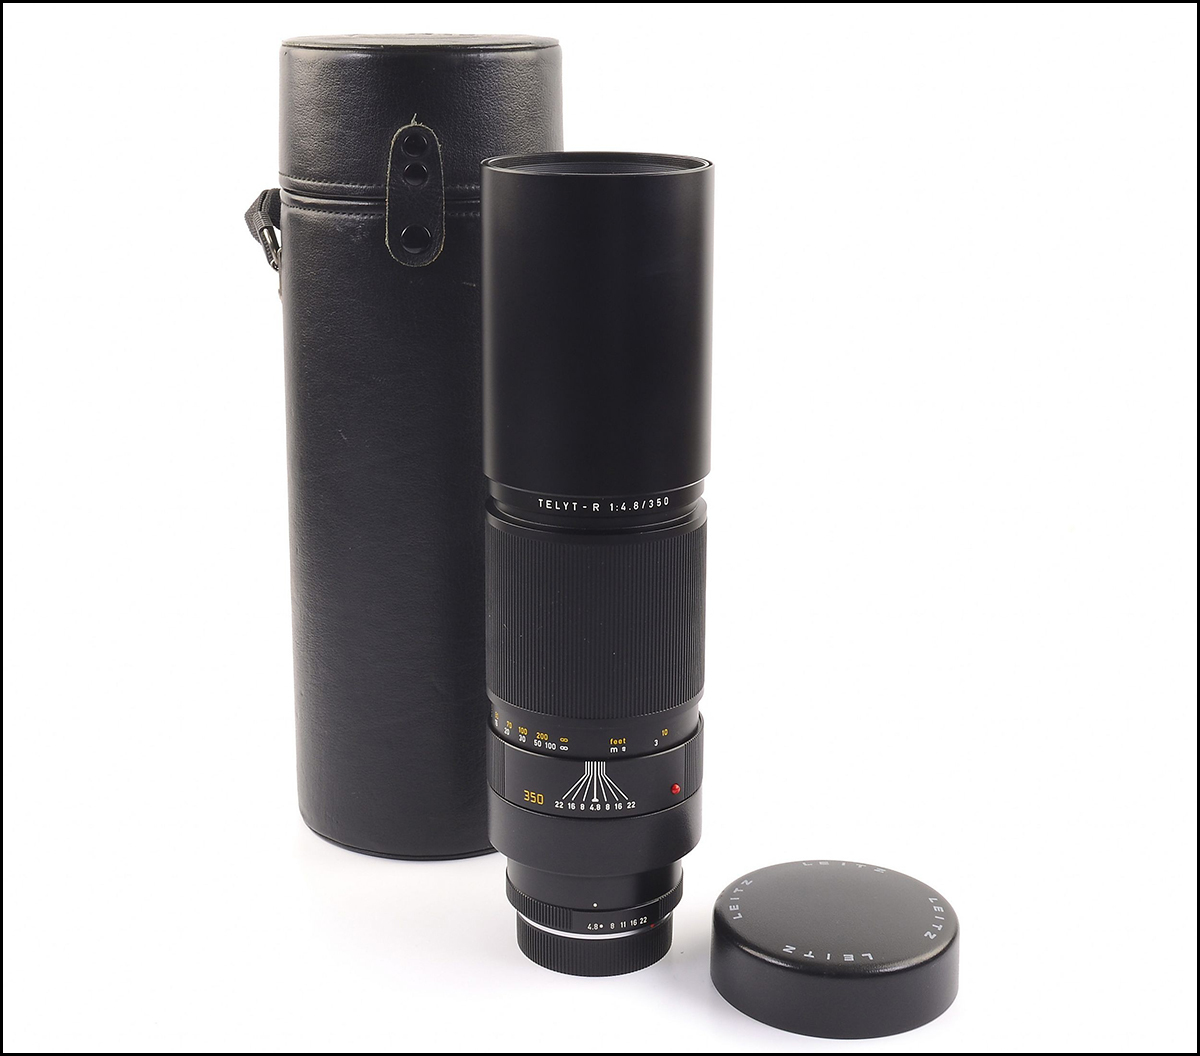 徕卡 Leica R 350/4.8 TELYT-R 长焦镜头 带皮桶